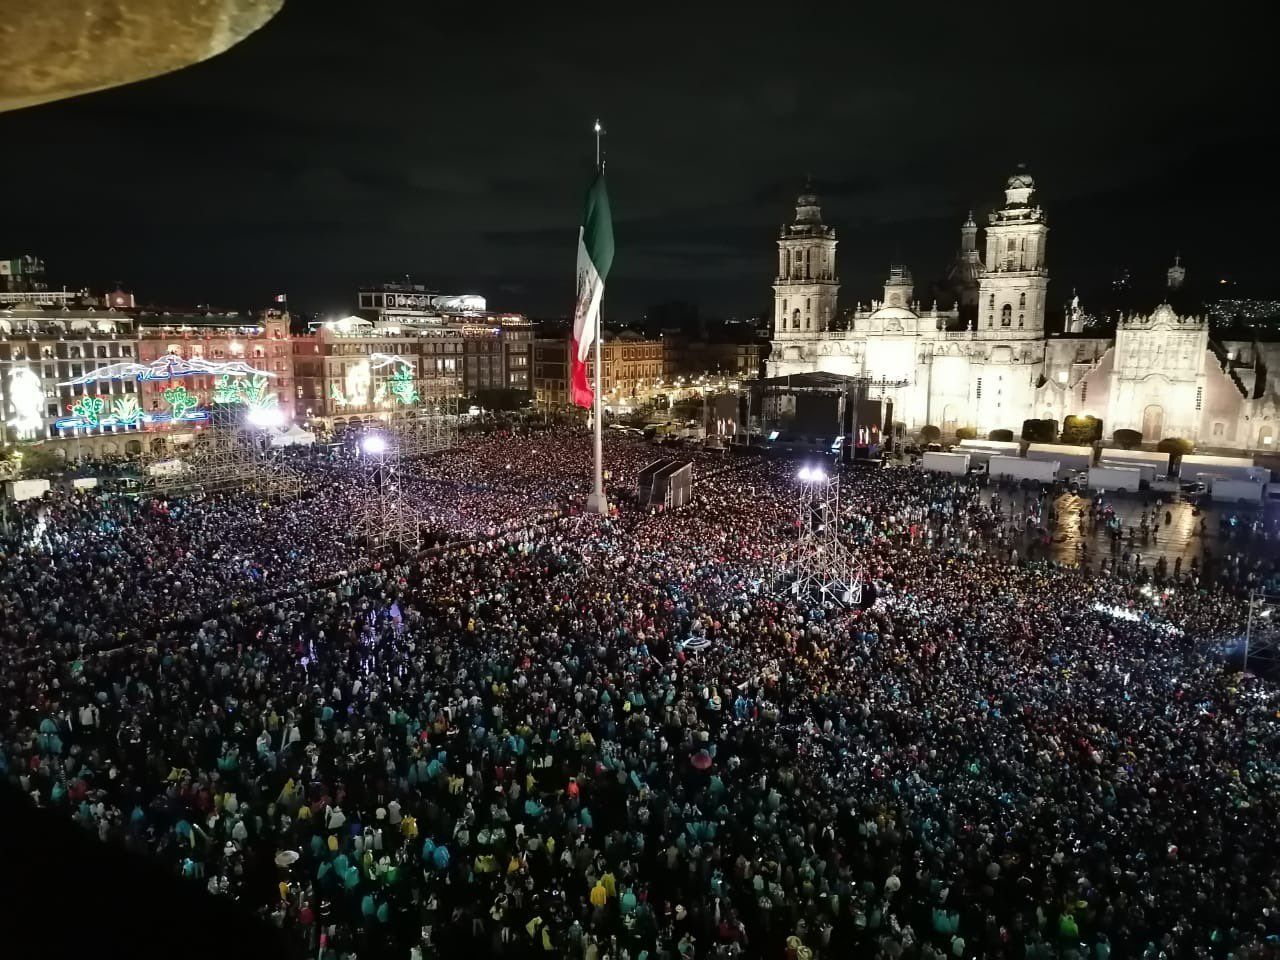 Masiva concurrencia para los festejos en la plaza de la capital.